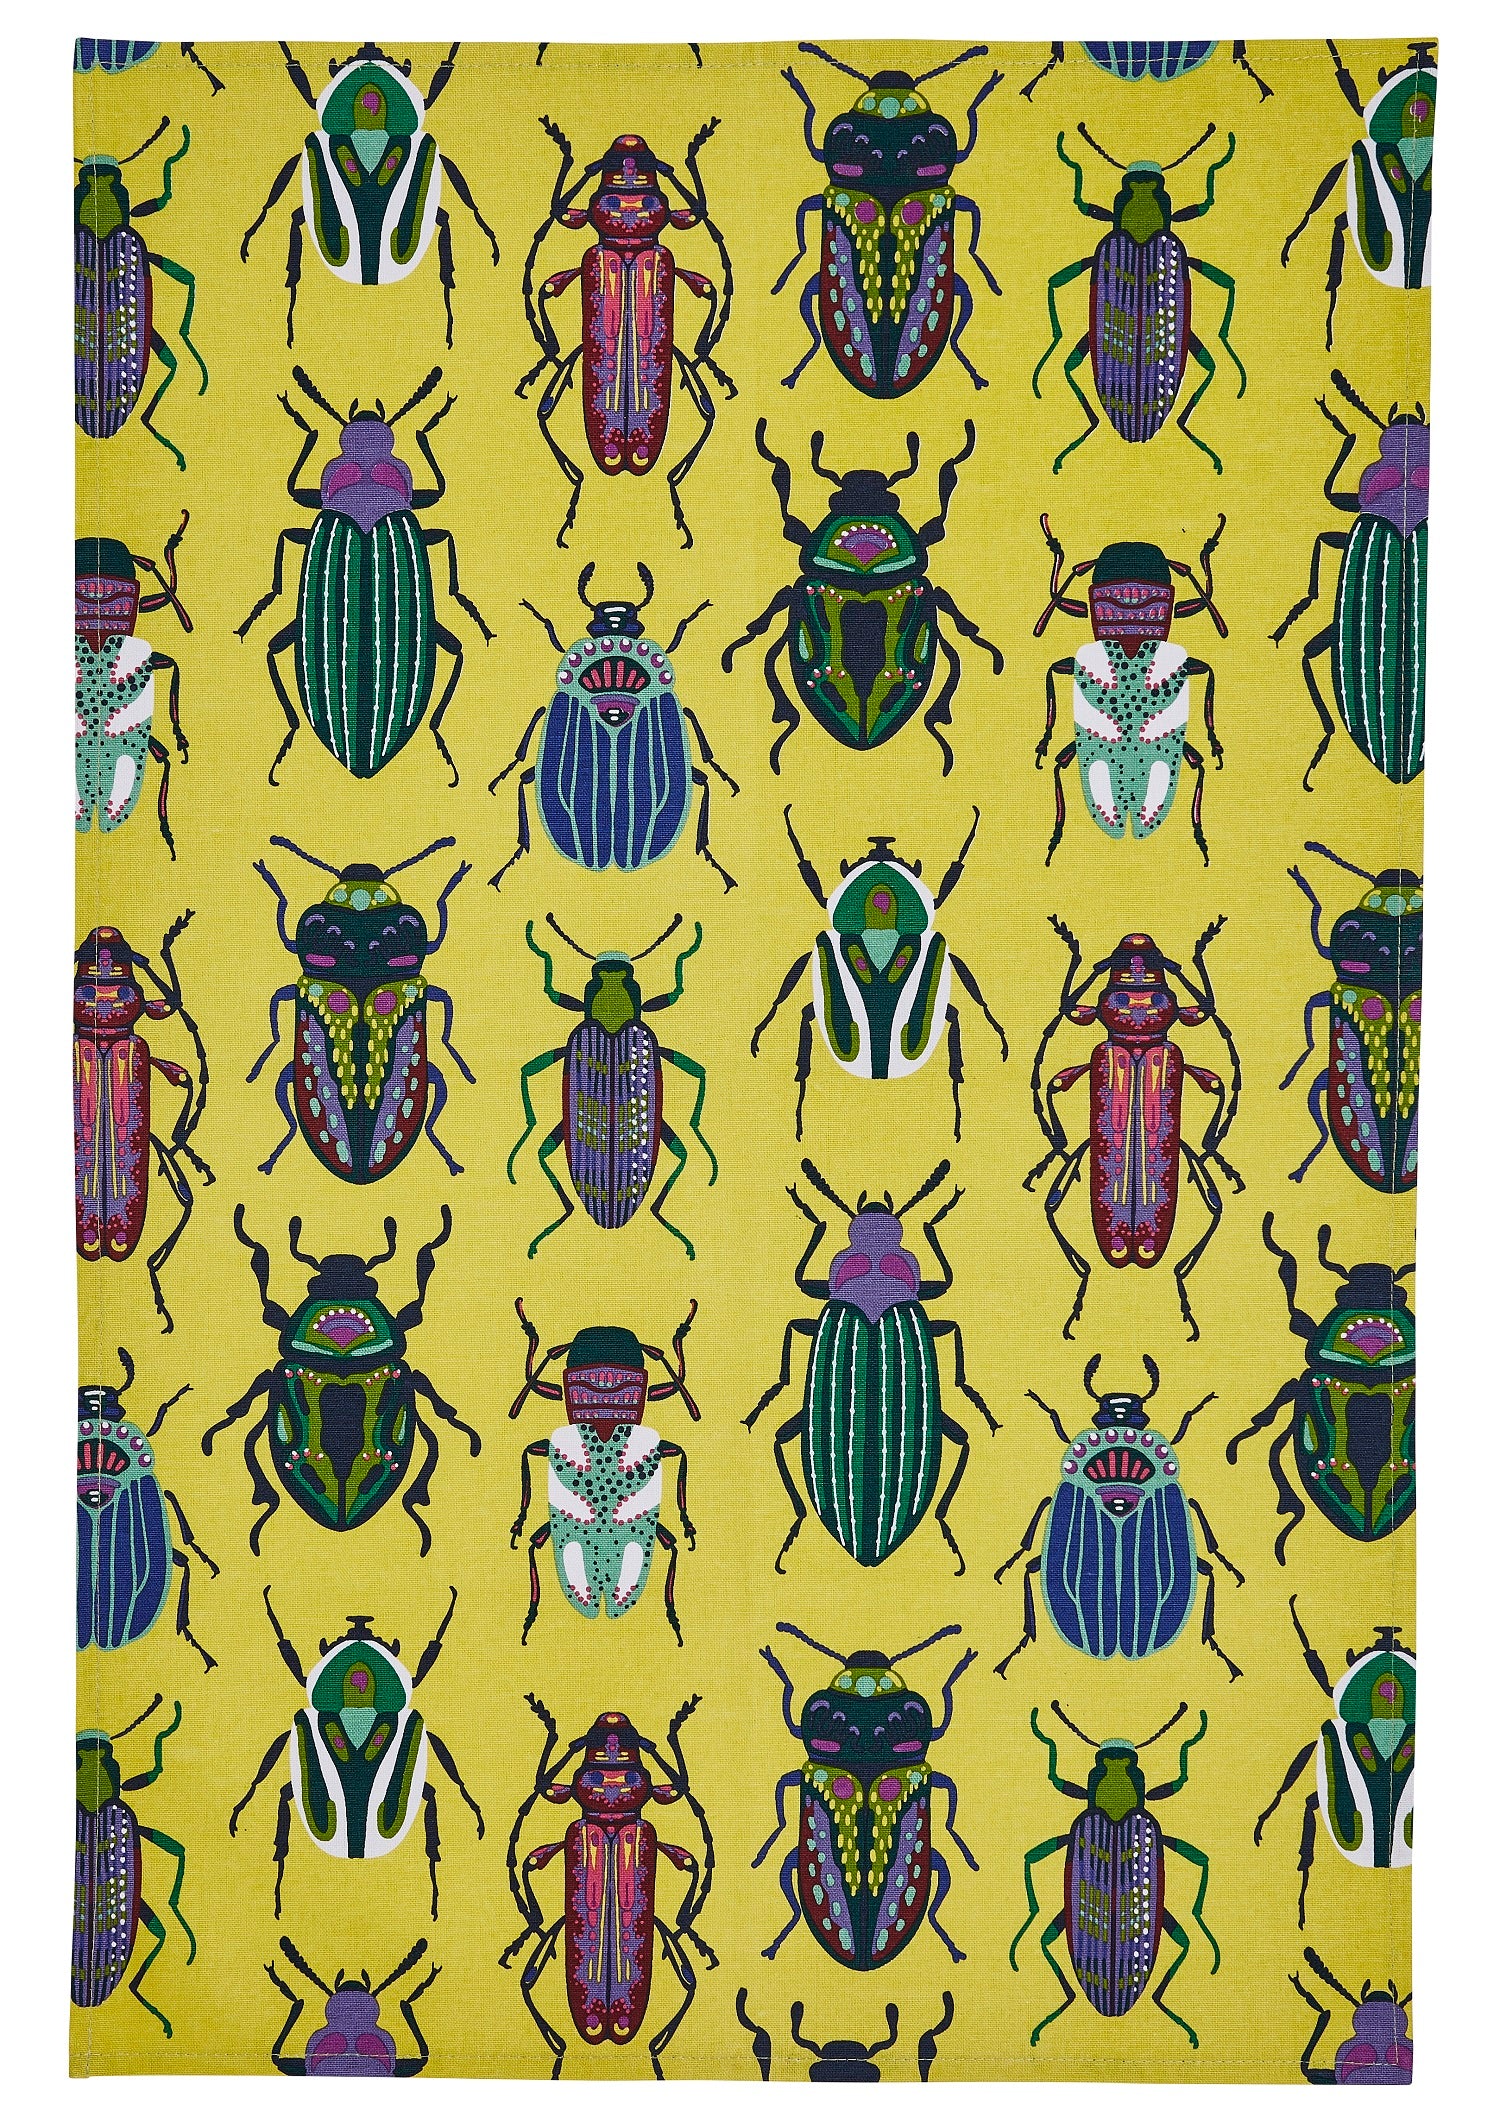 Ulster Weavers, "Beetles", Pure cotton printed tea towel. - Home Landing